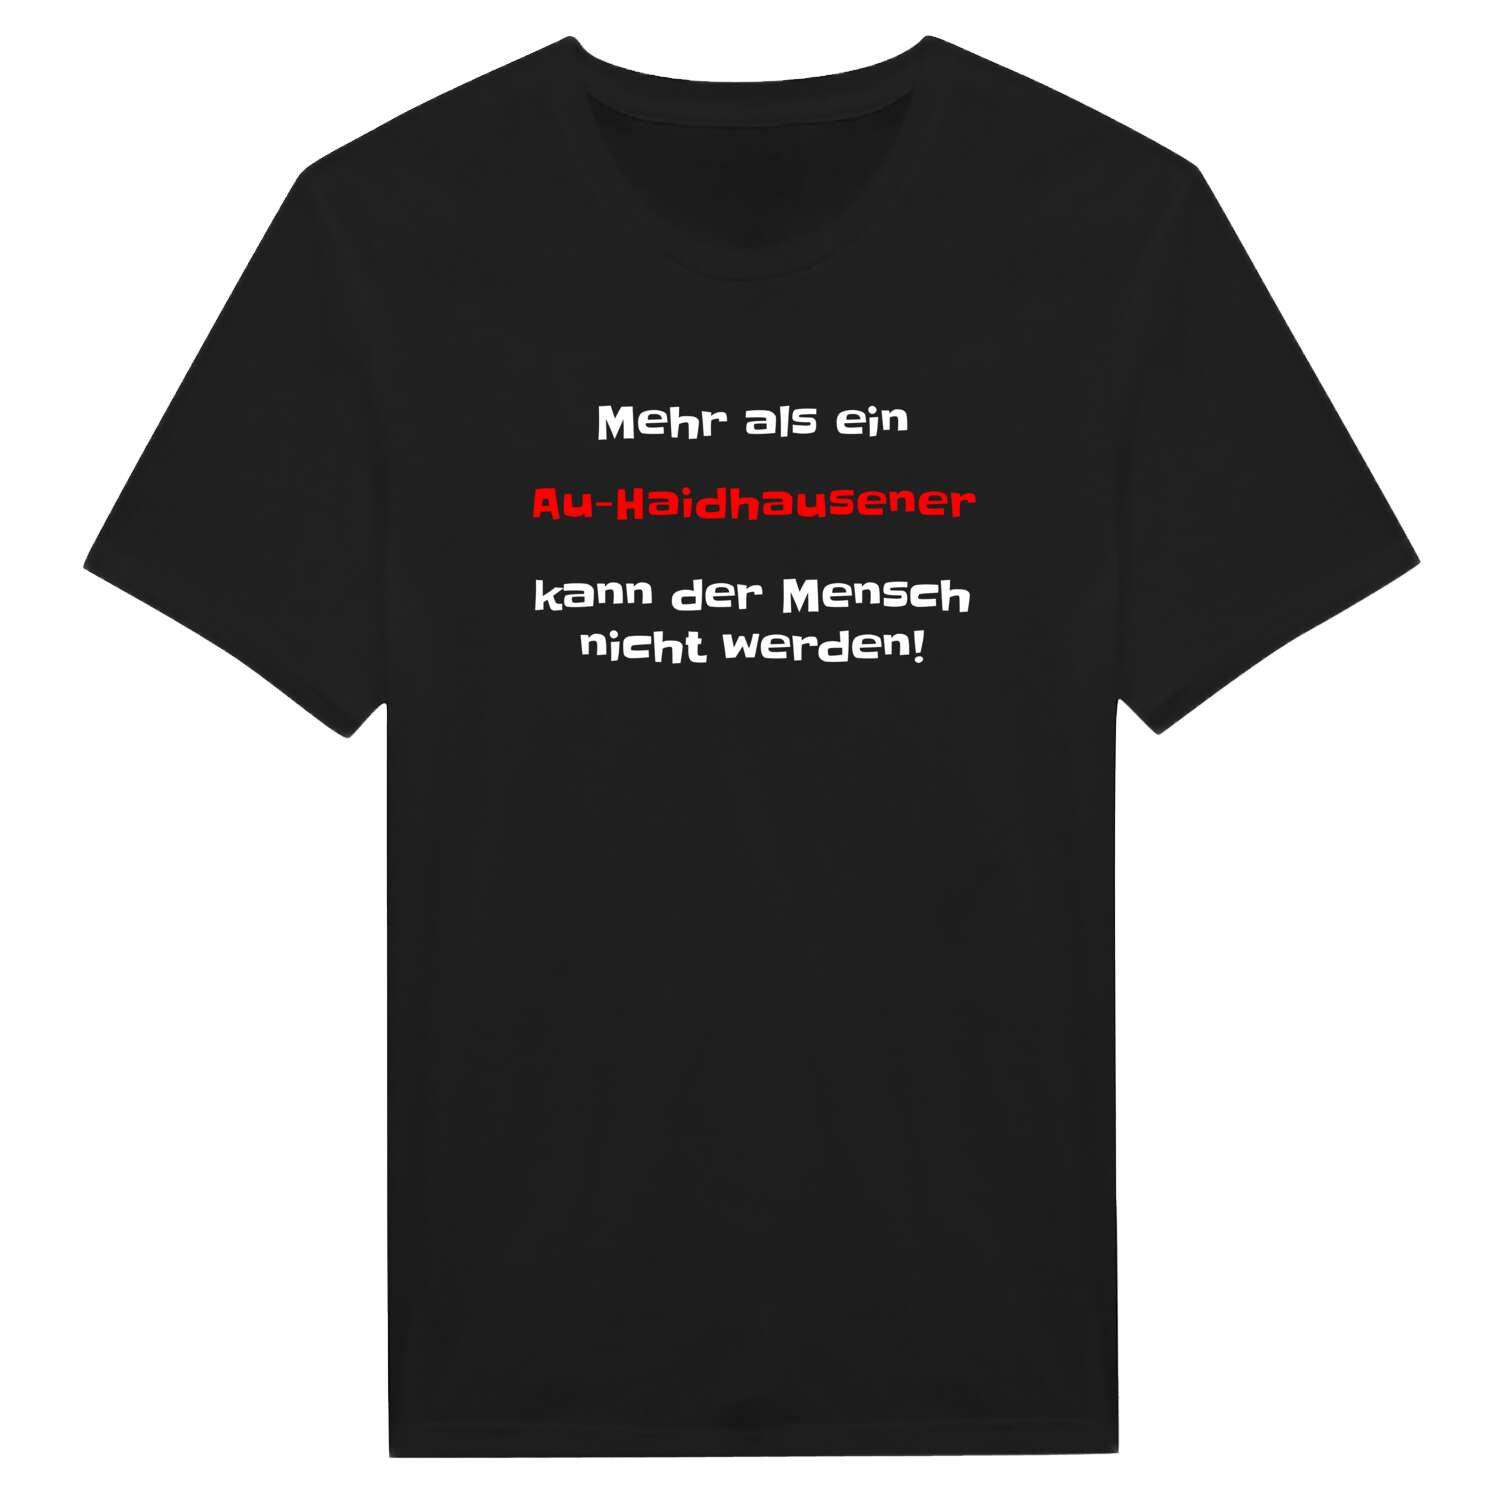 Au-Haidhausen T-Shirt »Mehr als ein«